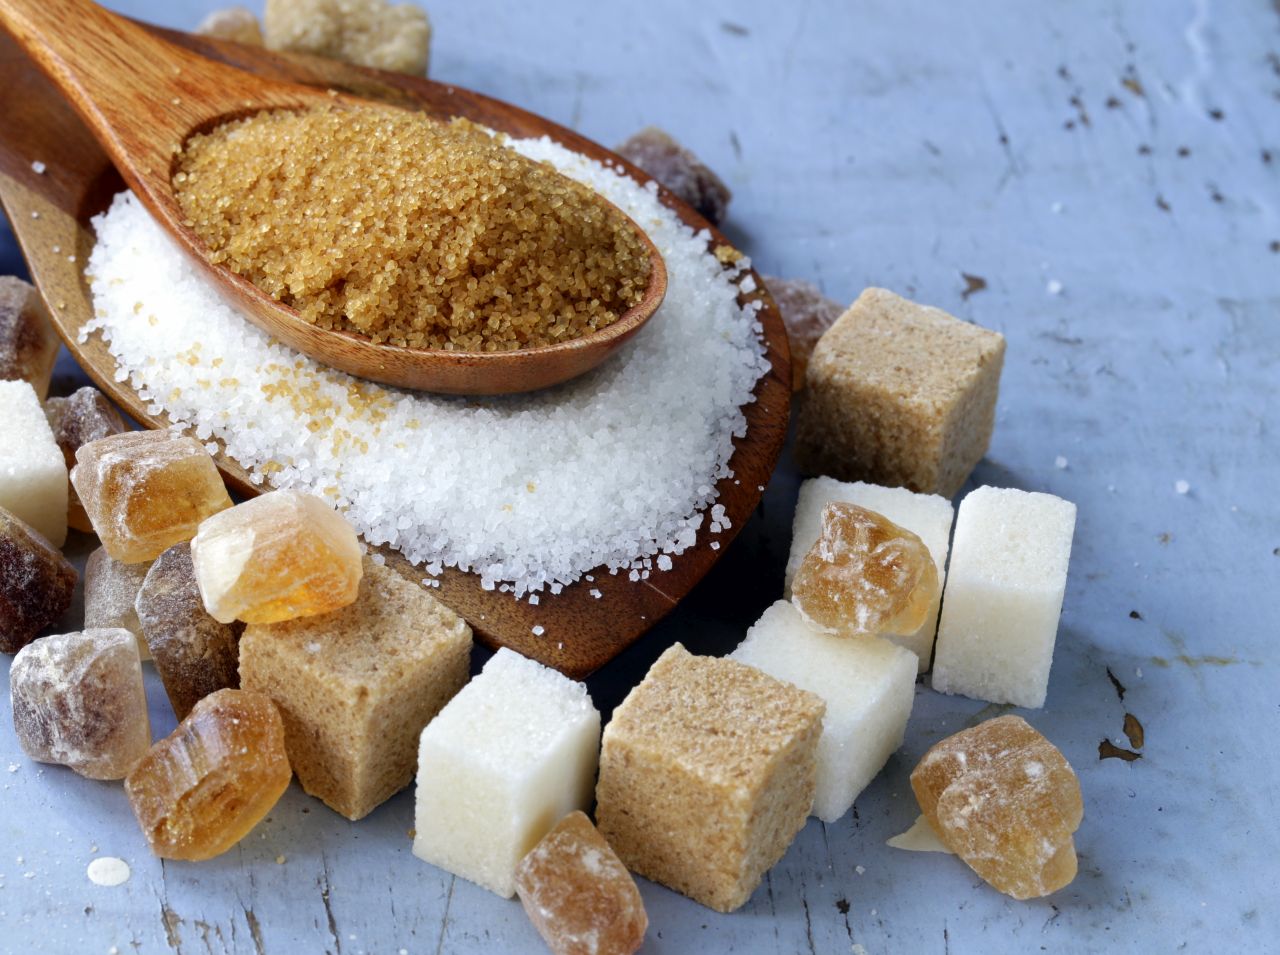 Jakie alternatywy dla cukru warto dodawać do codziennych posiłków?